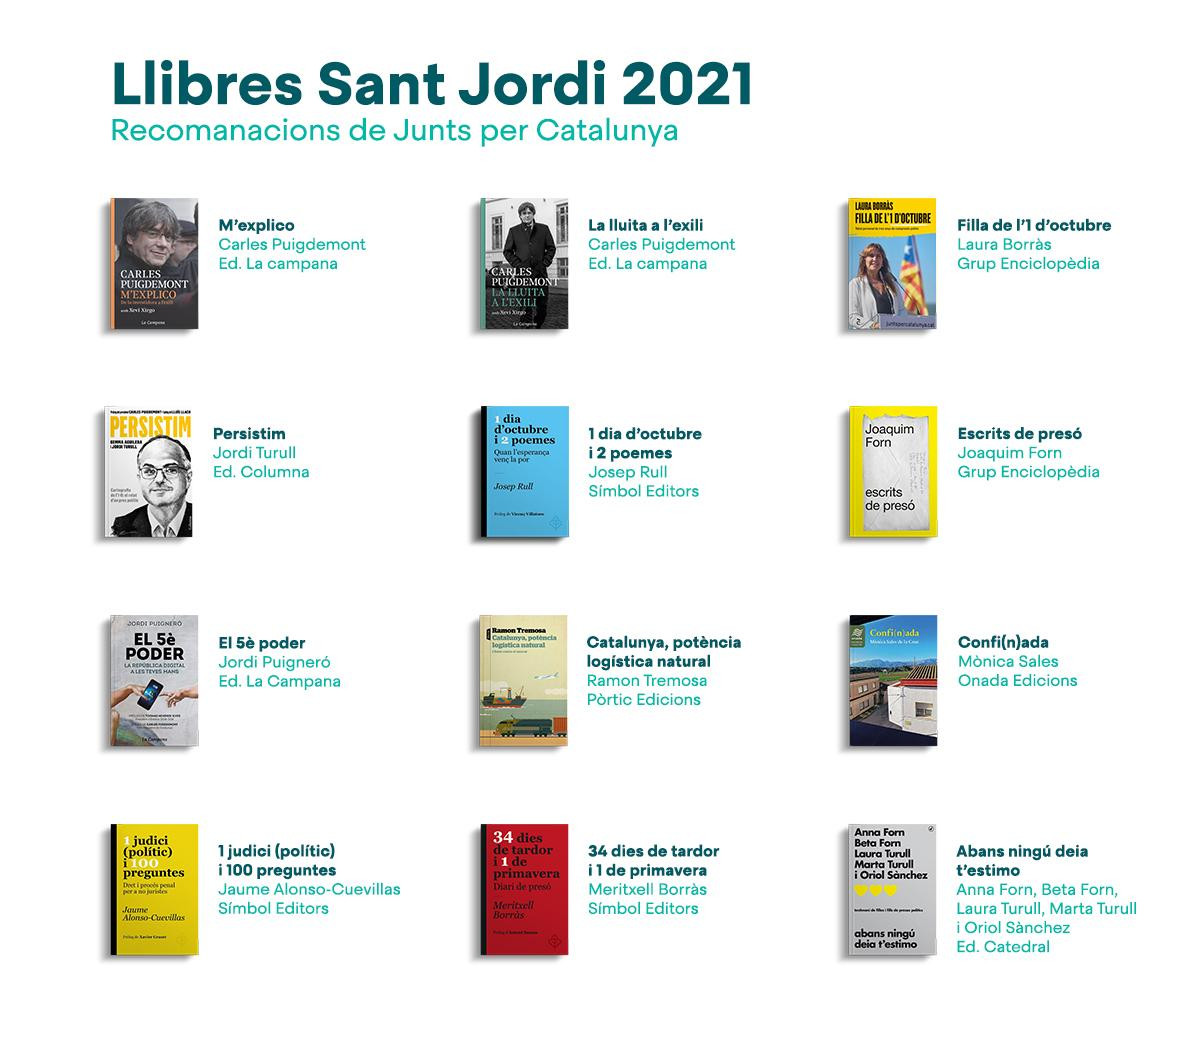 Libros recomendados por JxCat para Sant Jordi, entre los cuales no figura el de Torra / JUNTS.CAT